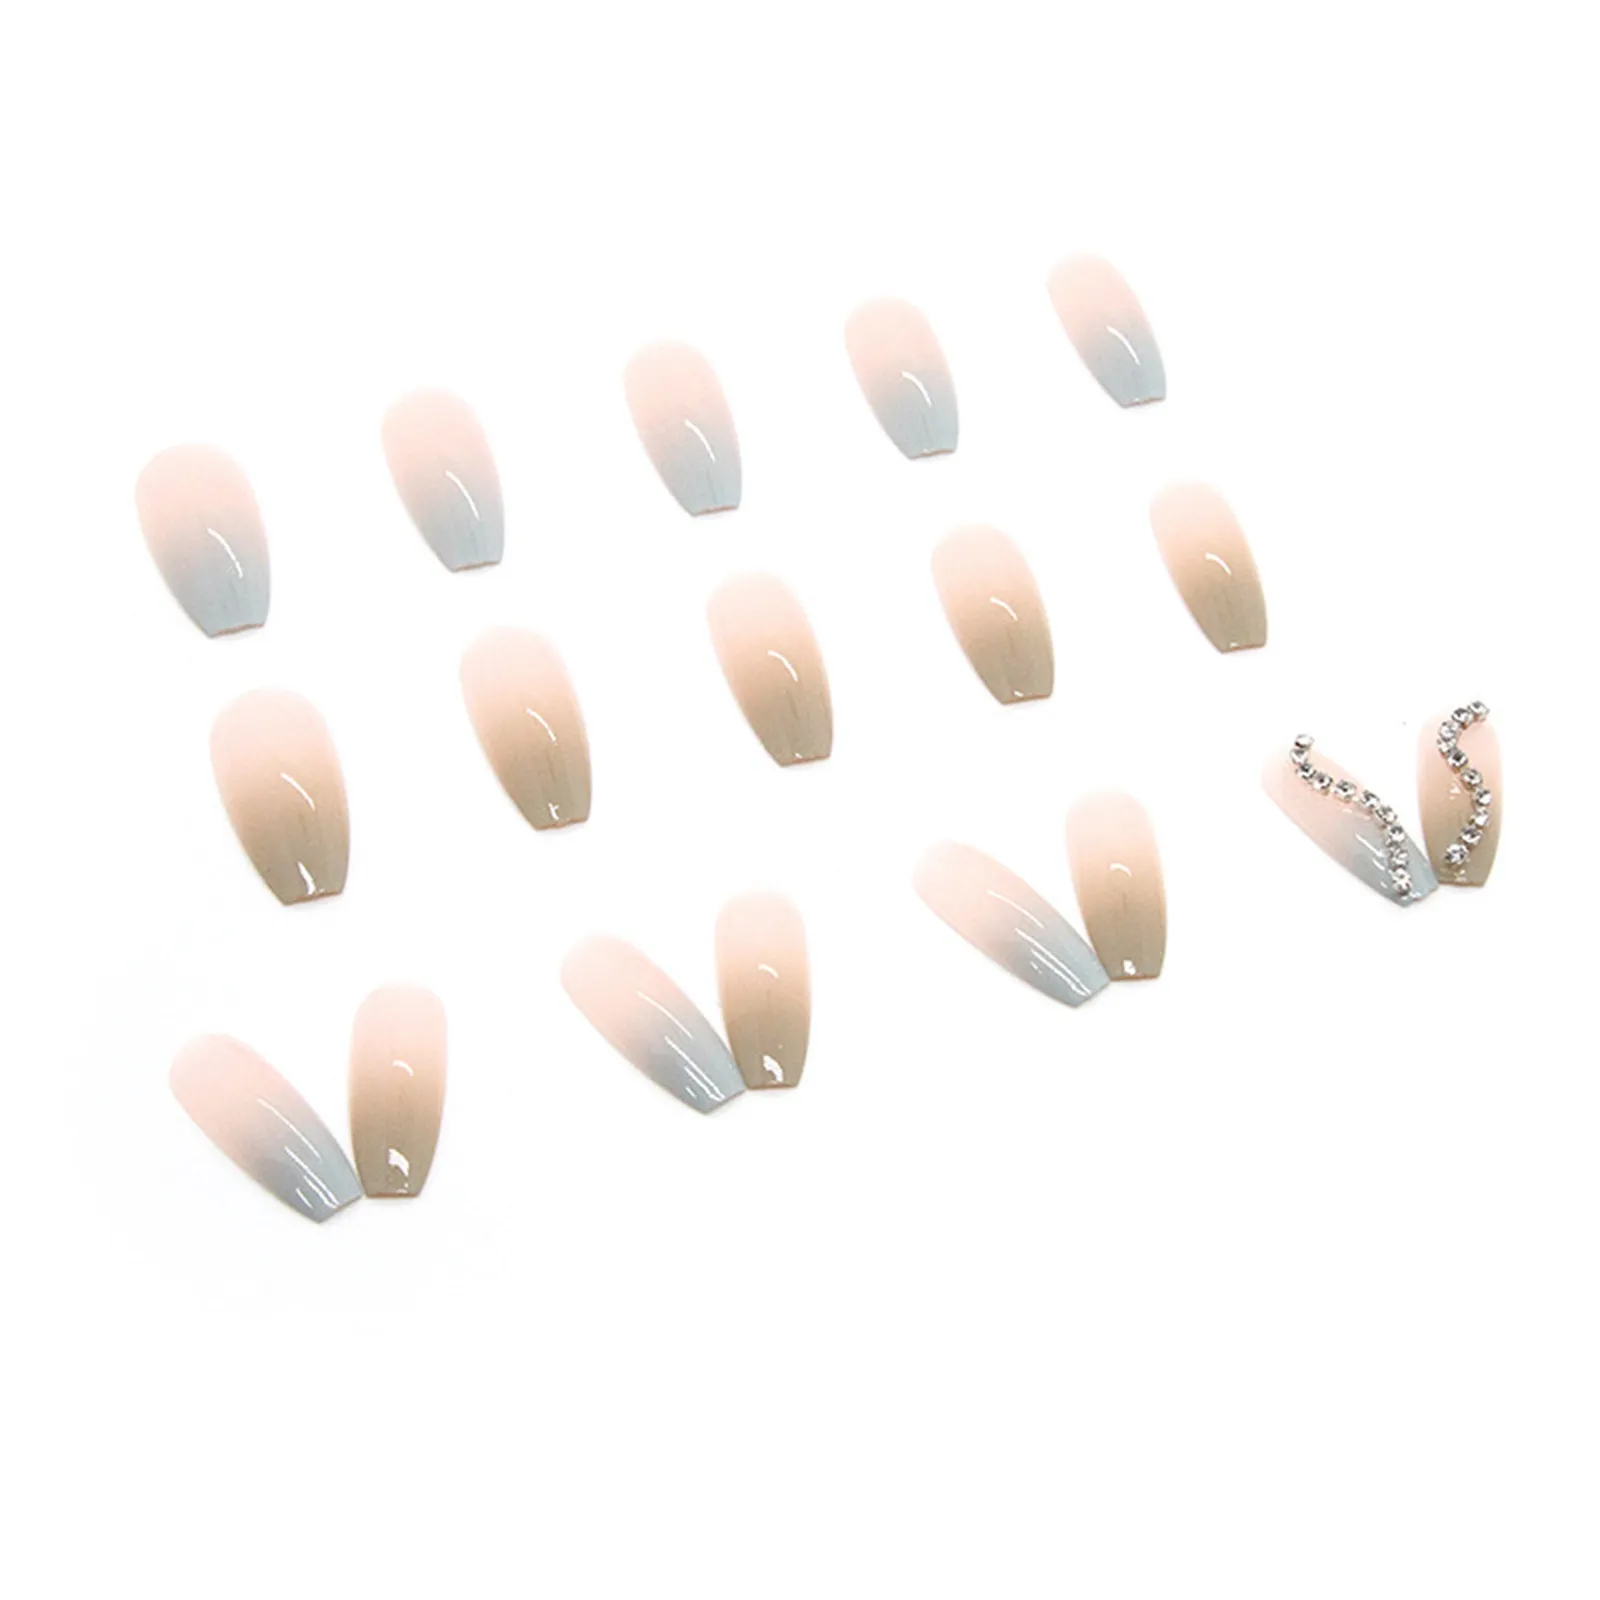 Puntas de uñas acrílicas ataúd transparente turquesa parche de uñas falsas fresco y gradual dual color largo en uñas ataúd mitad uñas puntas